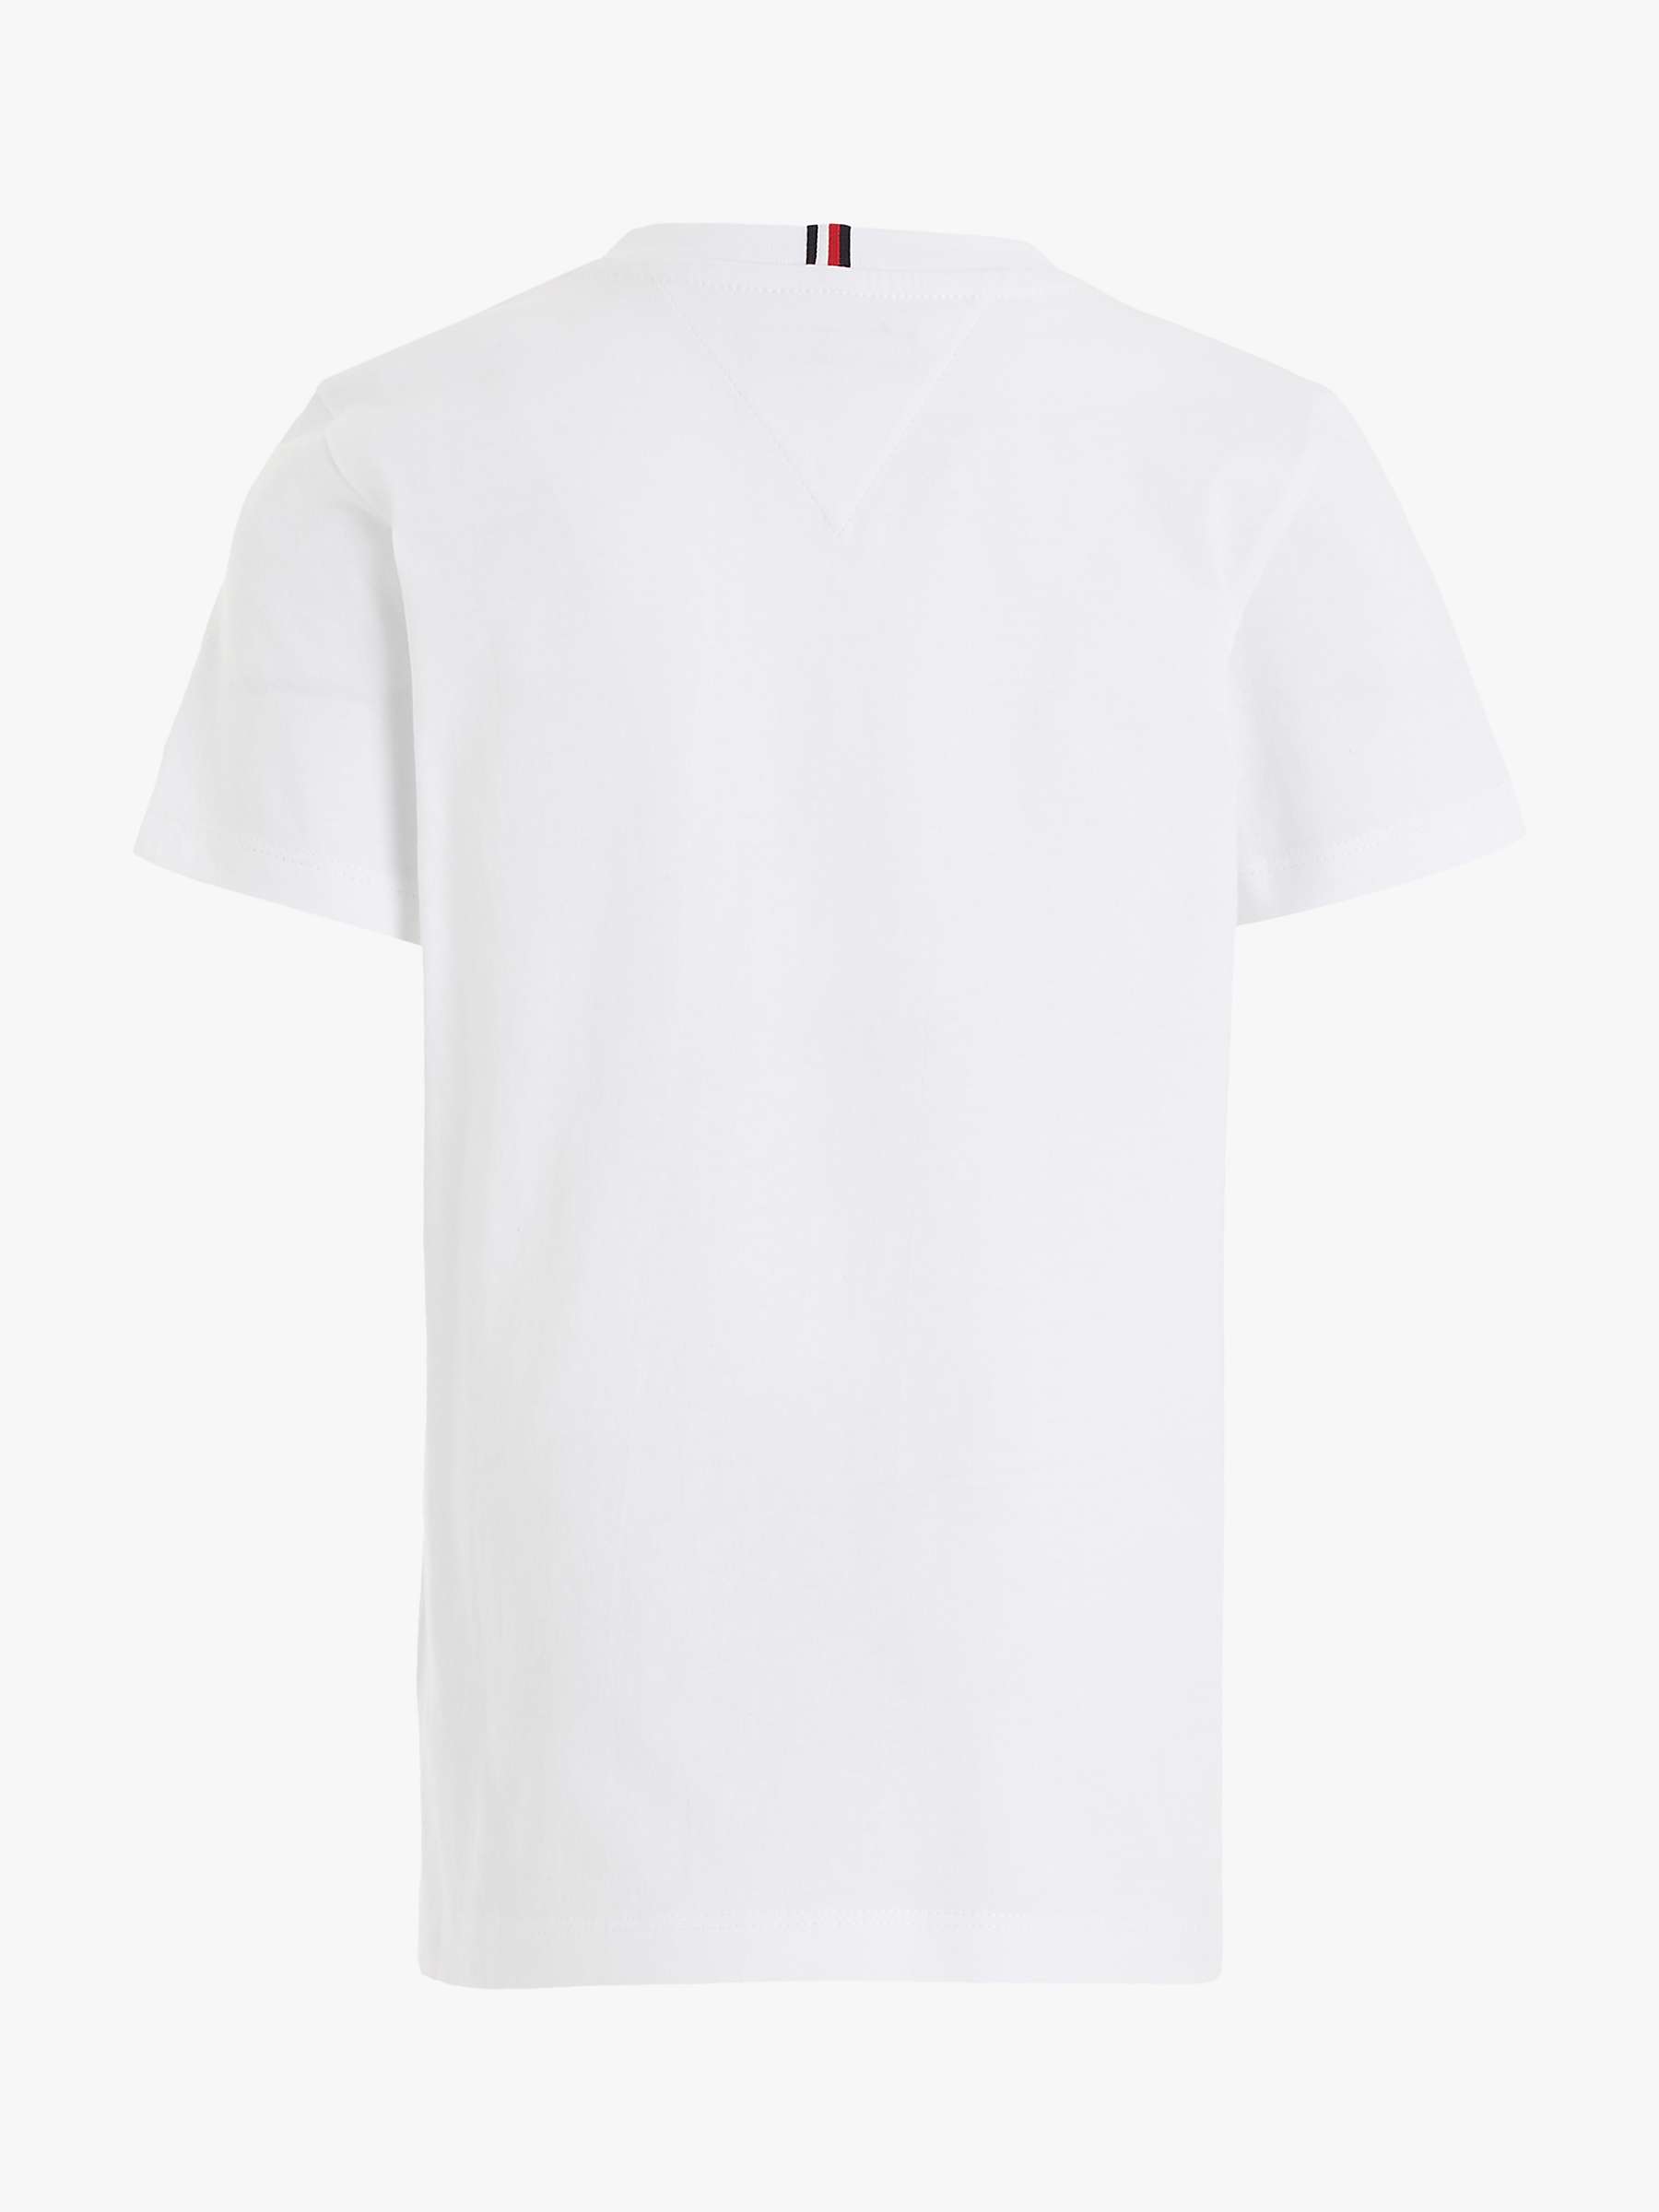 Buy Tommy Hilfiger Kids' Logo Short Sleeve T-Shirt Online at johnlewis.com